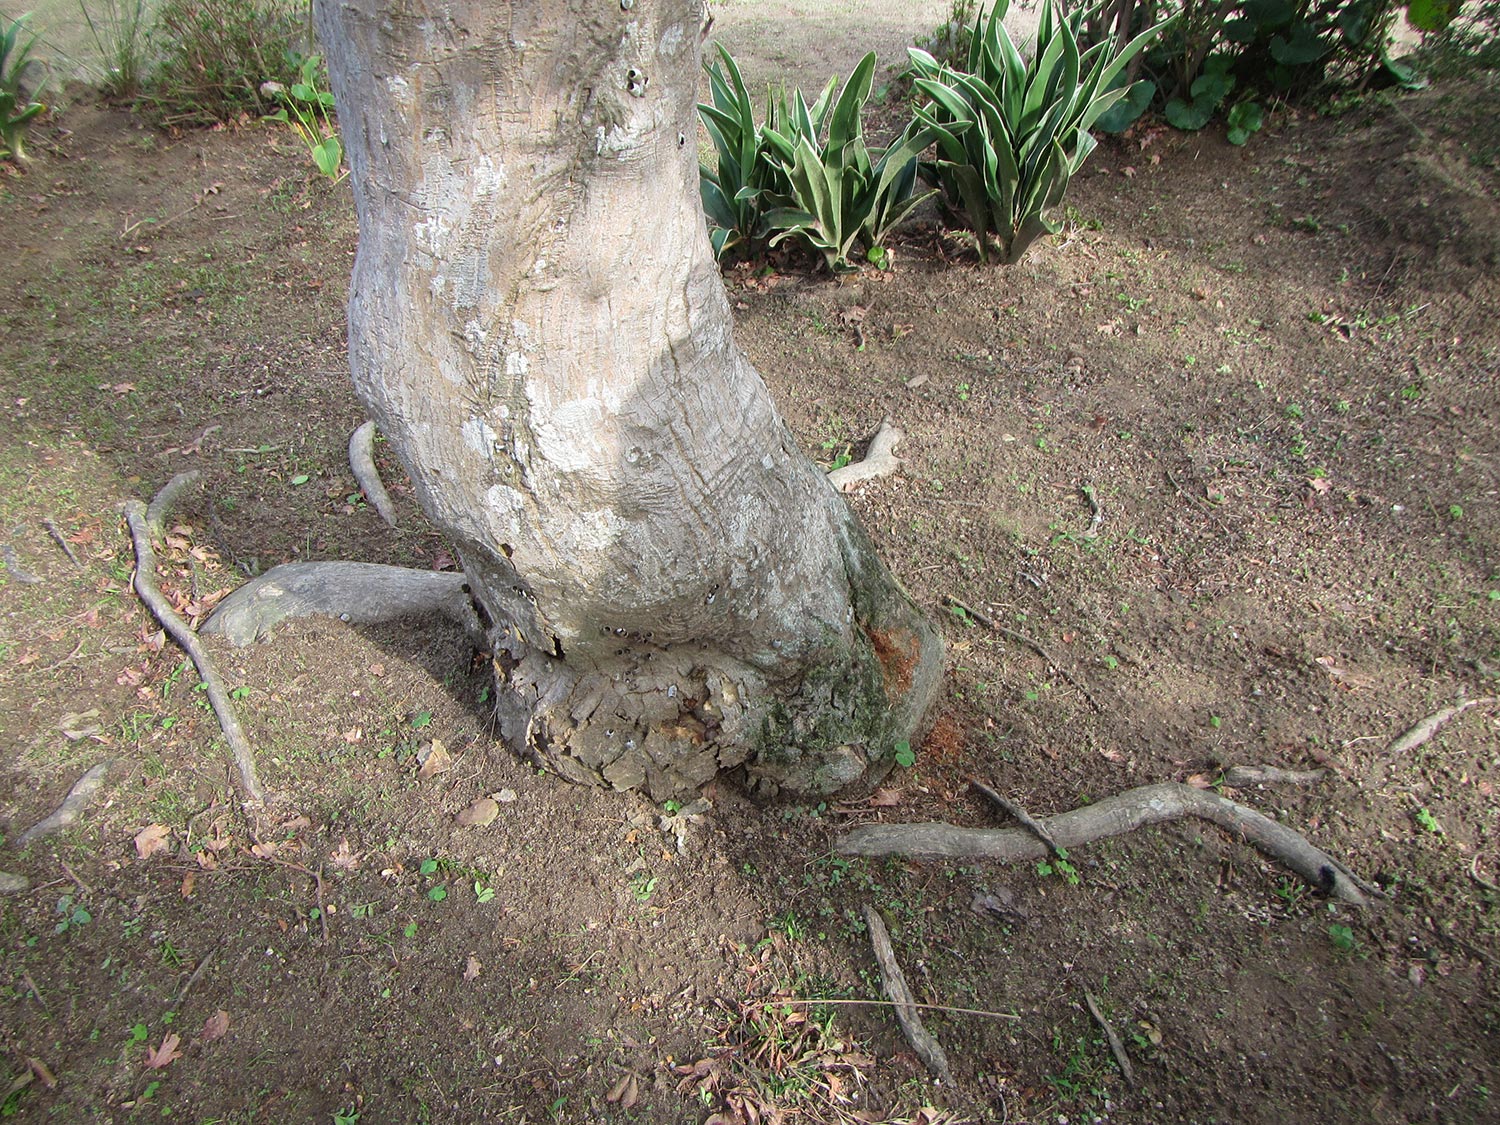 樹幹に空洞 カエデ モミジ 症状と対処方法 樹木診断 樹木診断と松くい虫被害対策 出雲市農林水産部森林政策課